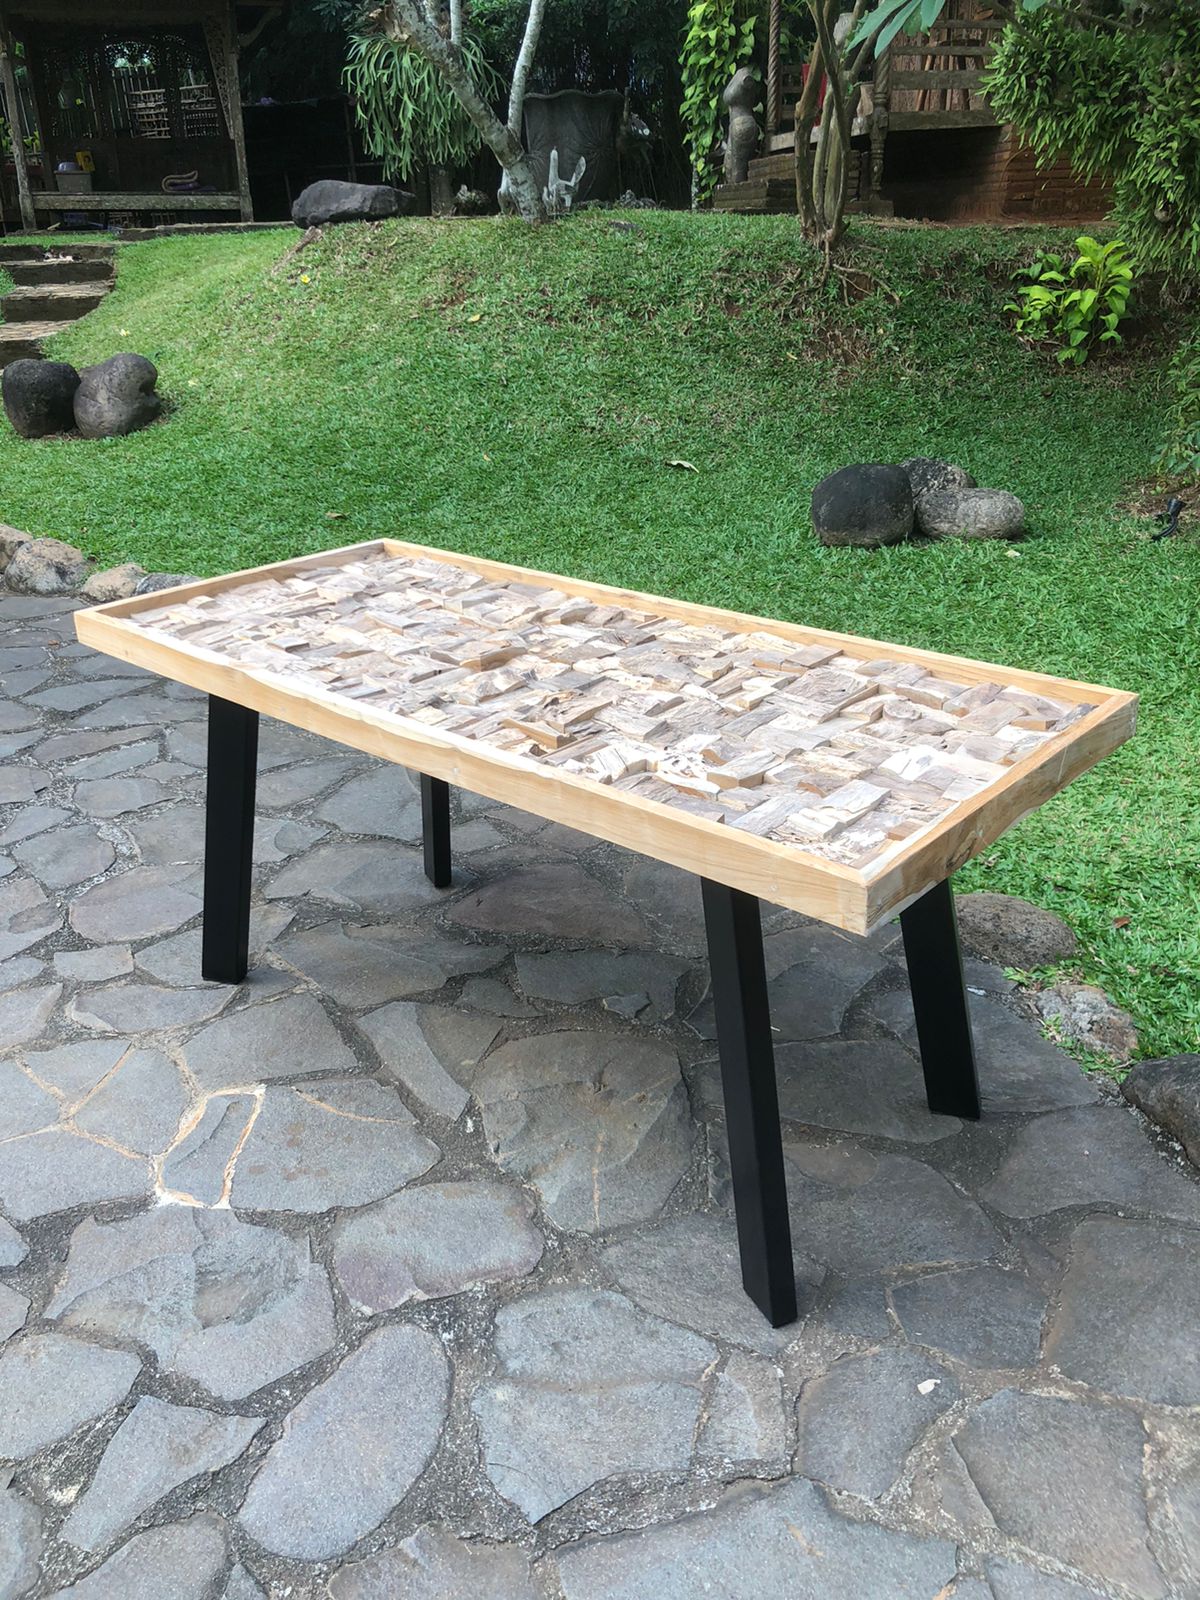 שולחן כתיבה דגם mz-2025 משטח עליון עץ טיק רגל נפחות מגיע עם זכוכית על משטח עליון